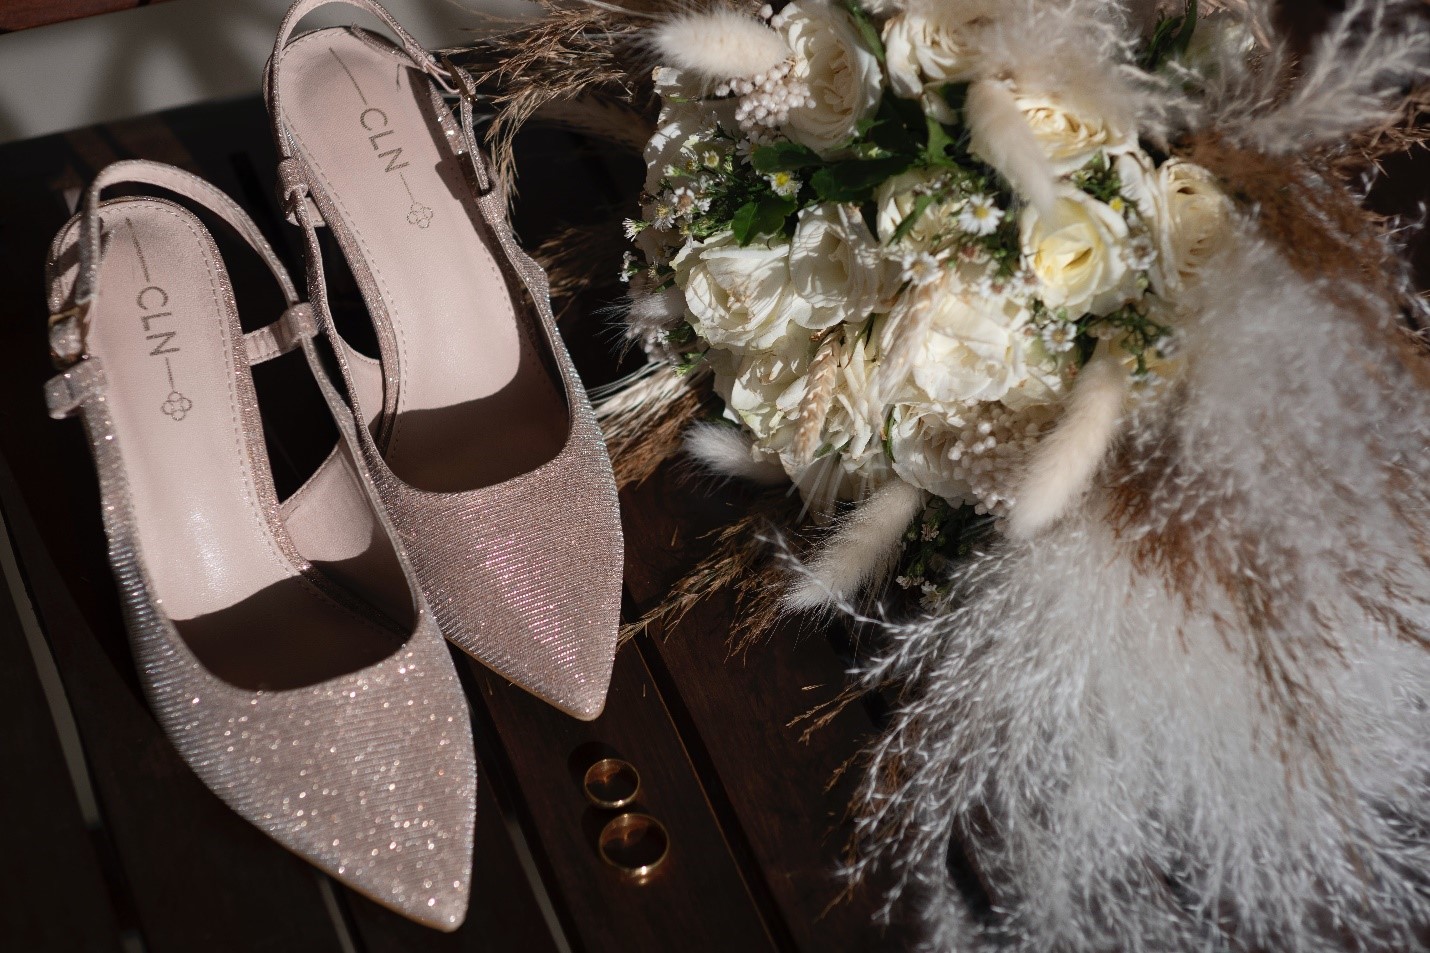 את הכי יפה כשנוח לך: איך בוחרים נעלי כלה לחתונה?